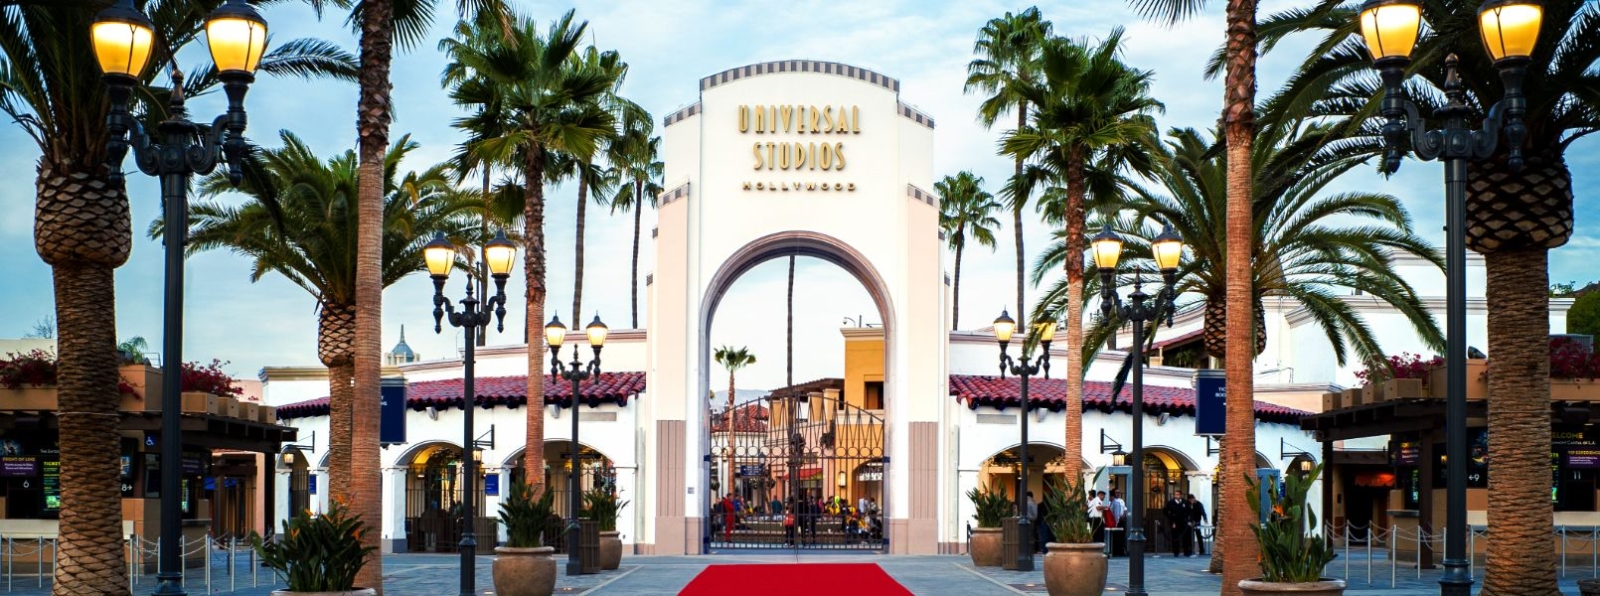 Universal Studios Hollywood℠ | Tickets | Virgin Atlantic Holidays